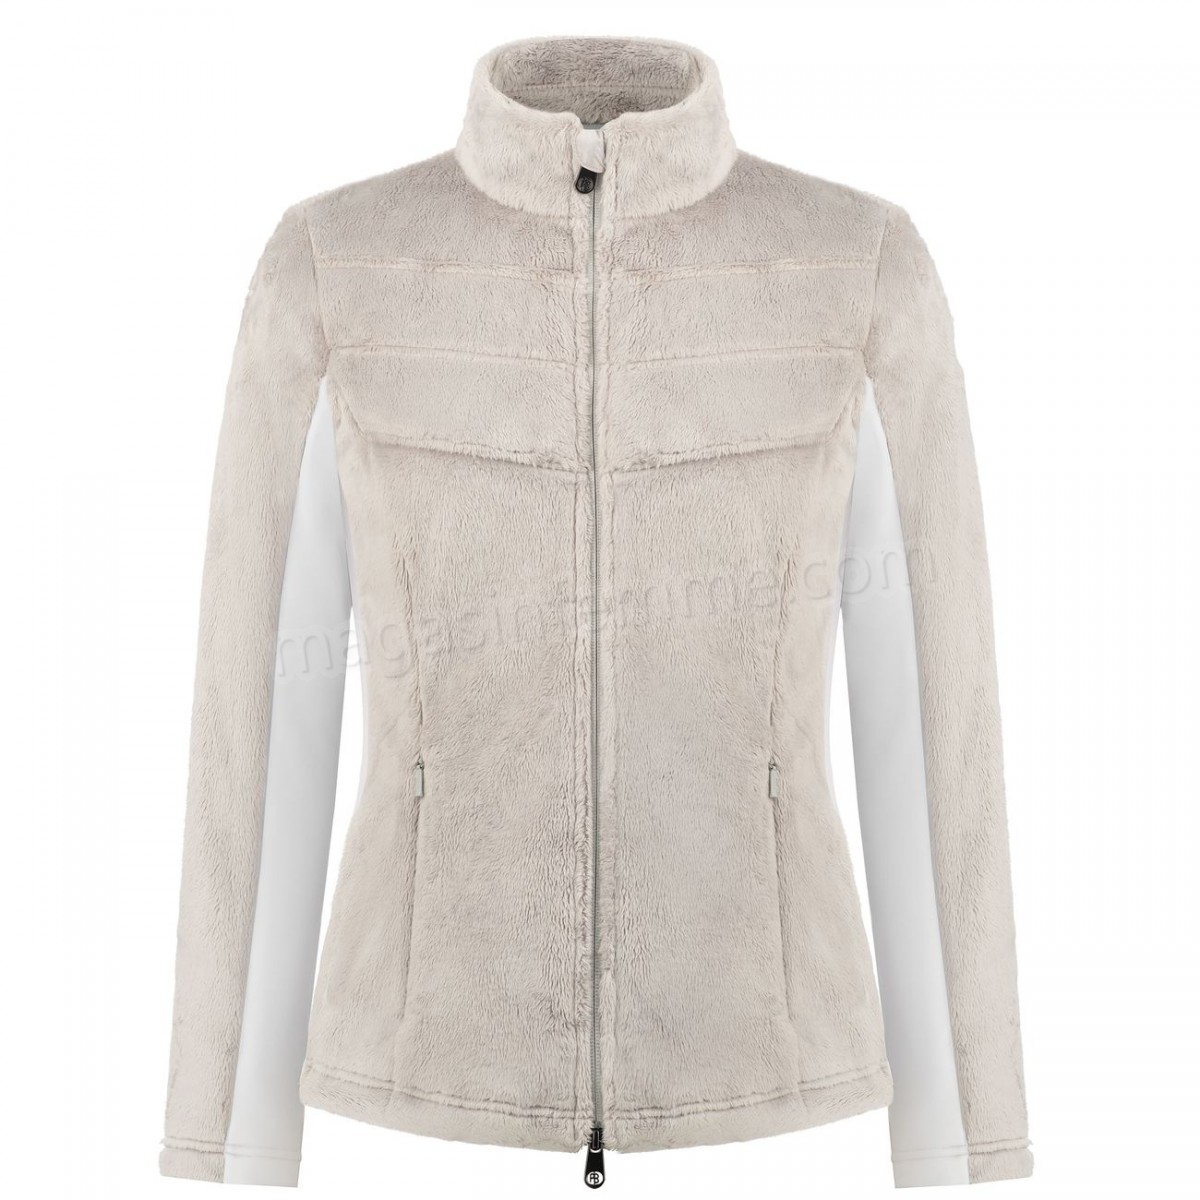 Poivre Blanc-Sports d'hiver femme POIVRE BLANC Polaire Poivre Blanc Long Pile Fleece Jacket 1603 Mineral Grey/white Femme en solde - -0